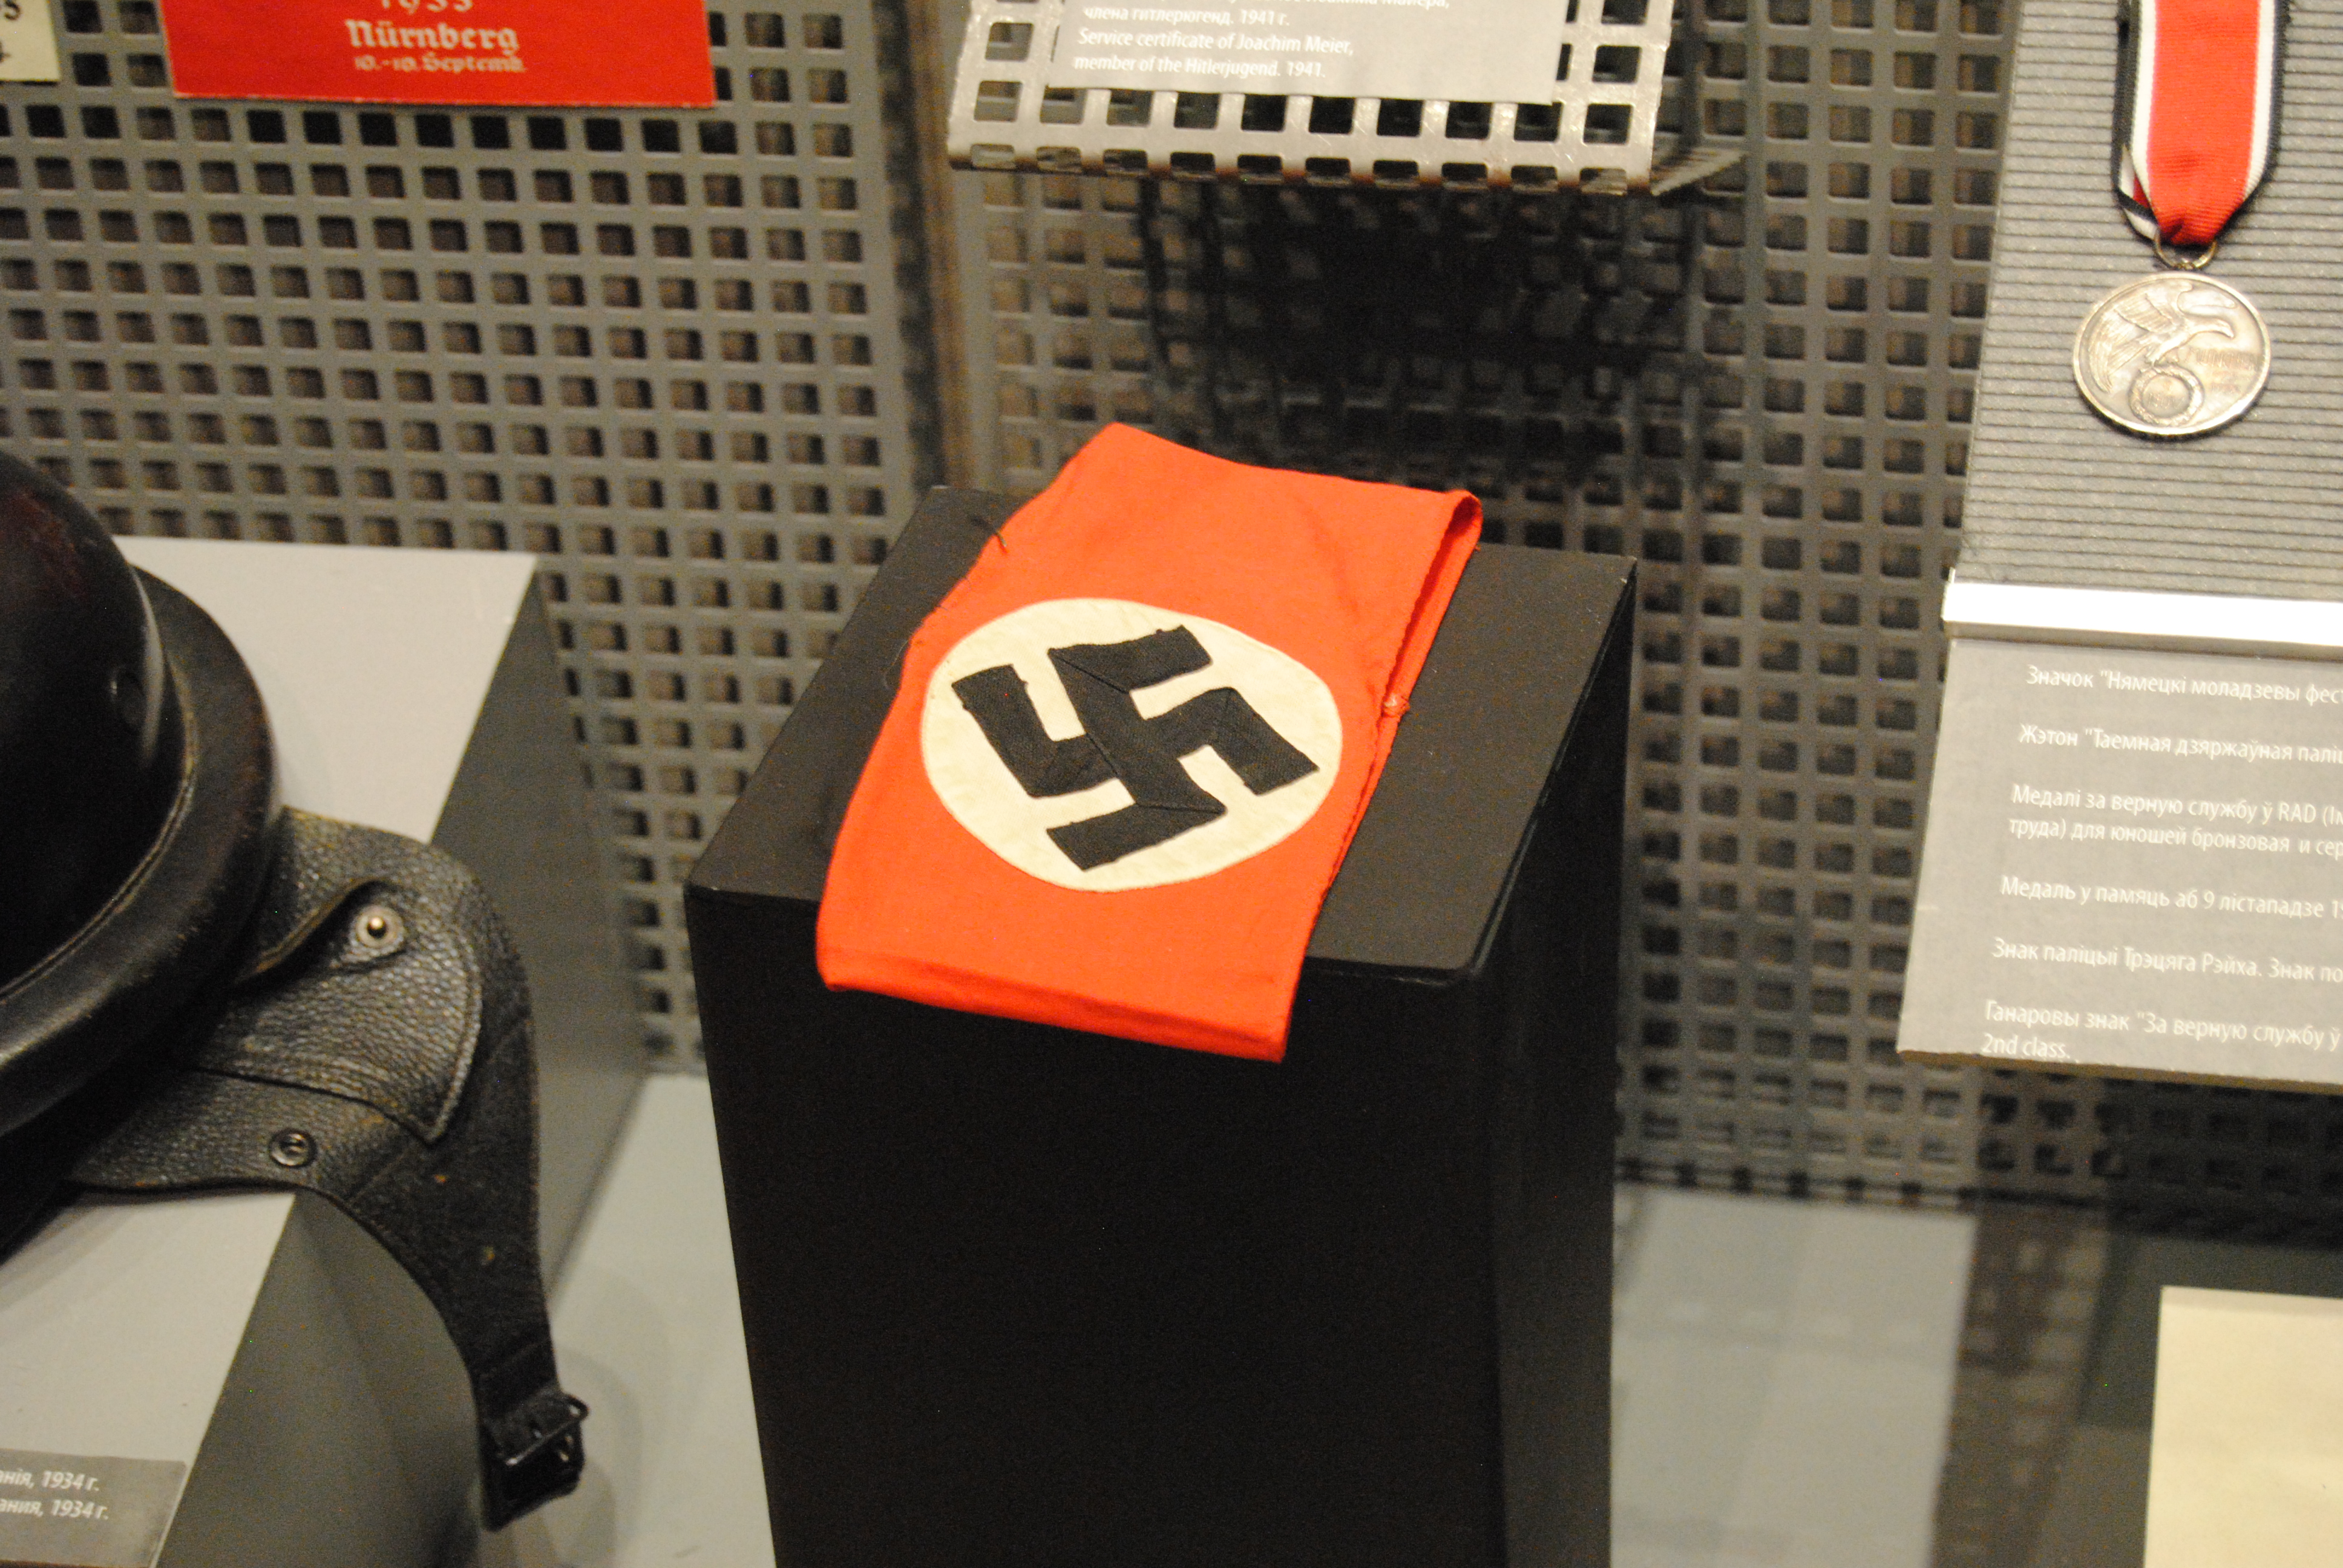 banda de brazo con el símbolo nazi